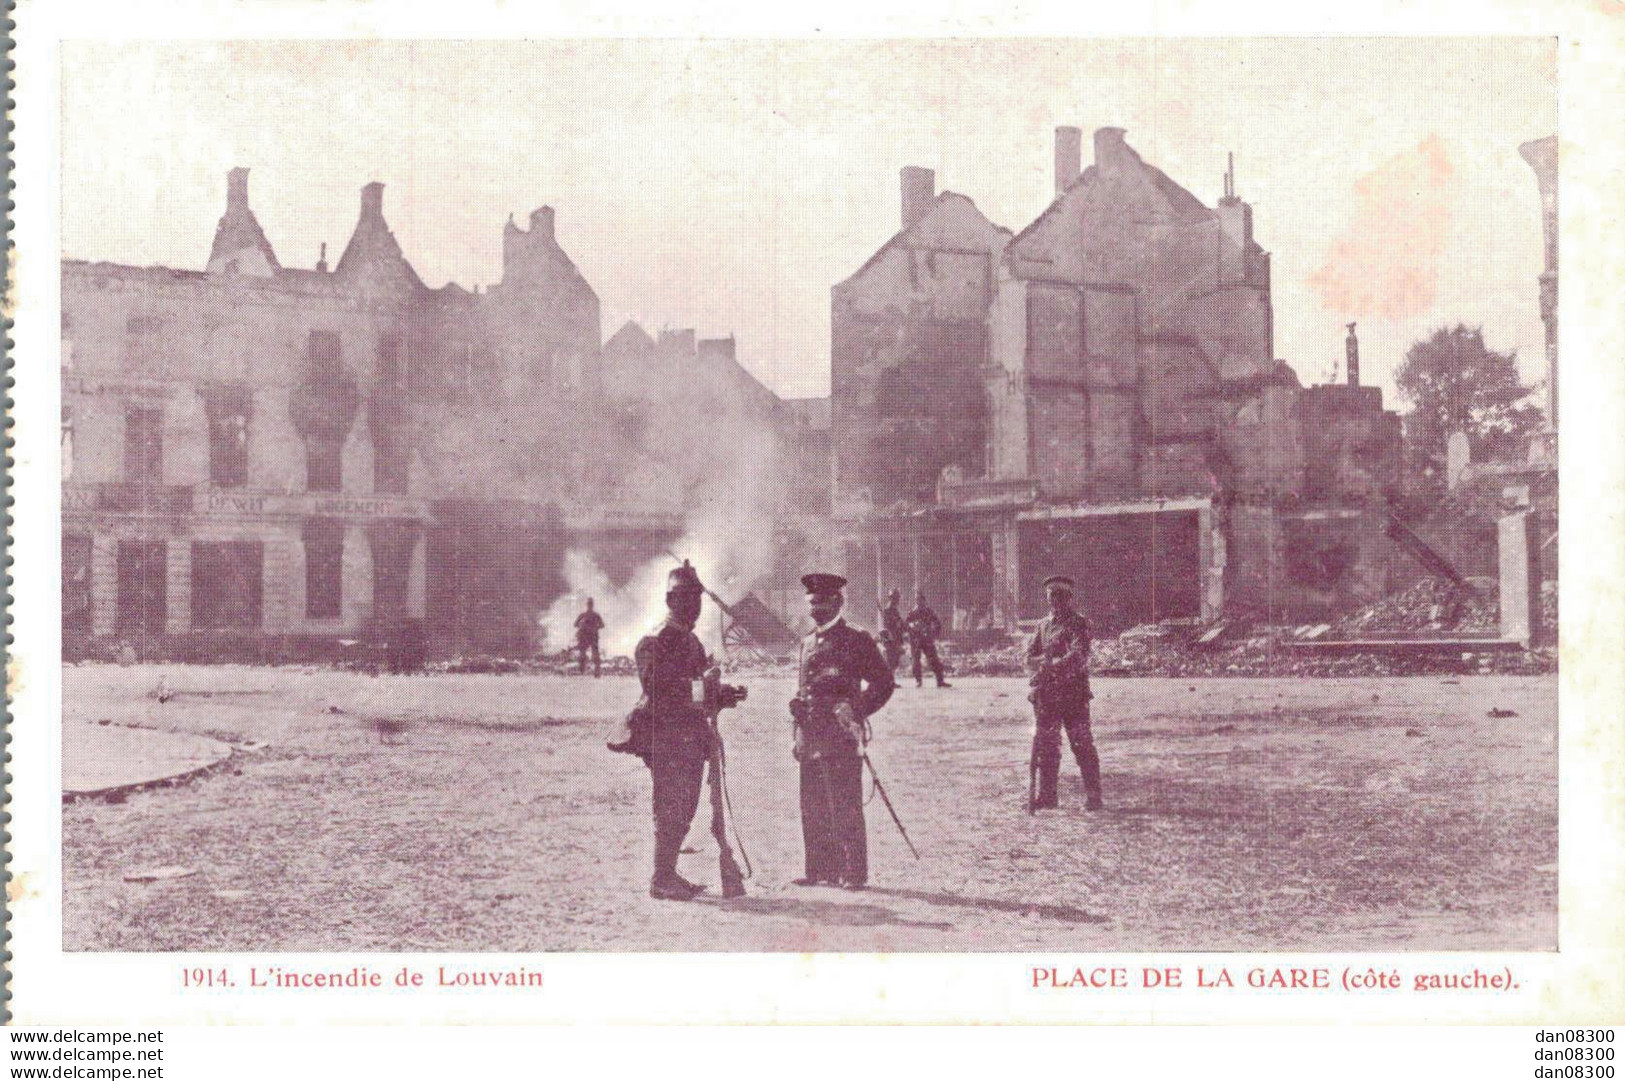 BELGIQUE L'INCENDIE DE LOUVAIN 1914 PLACE DE LA GARE COTE GAUCHE - Guerre 1914-18